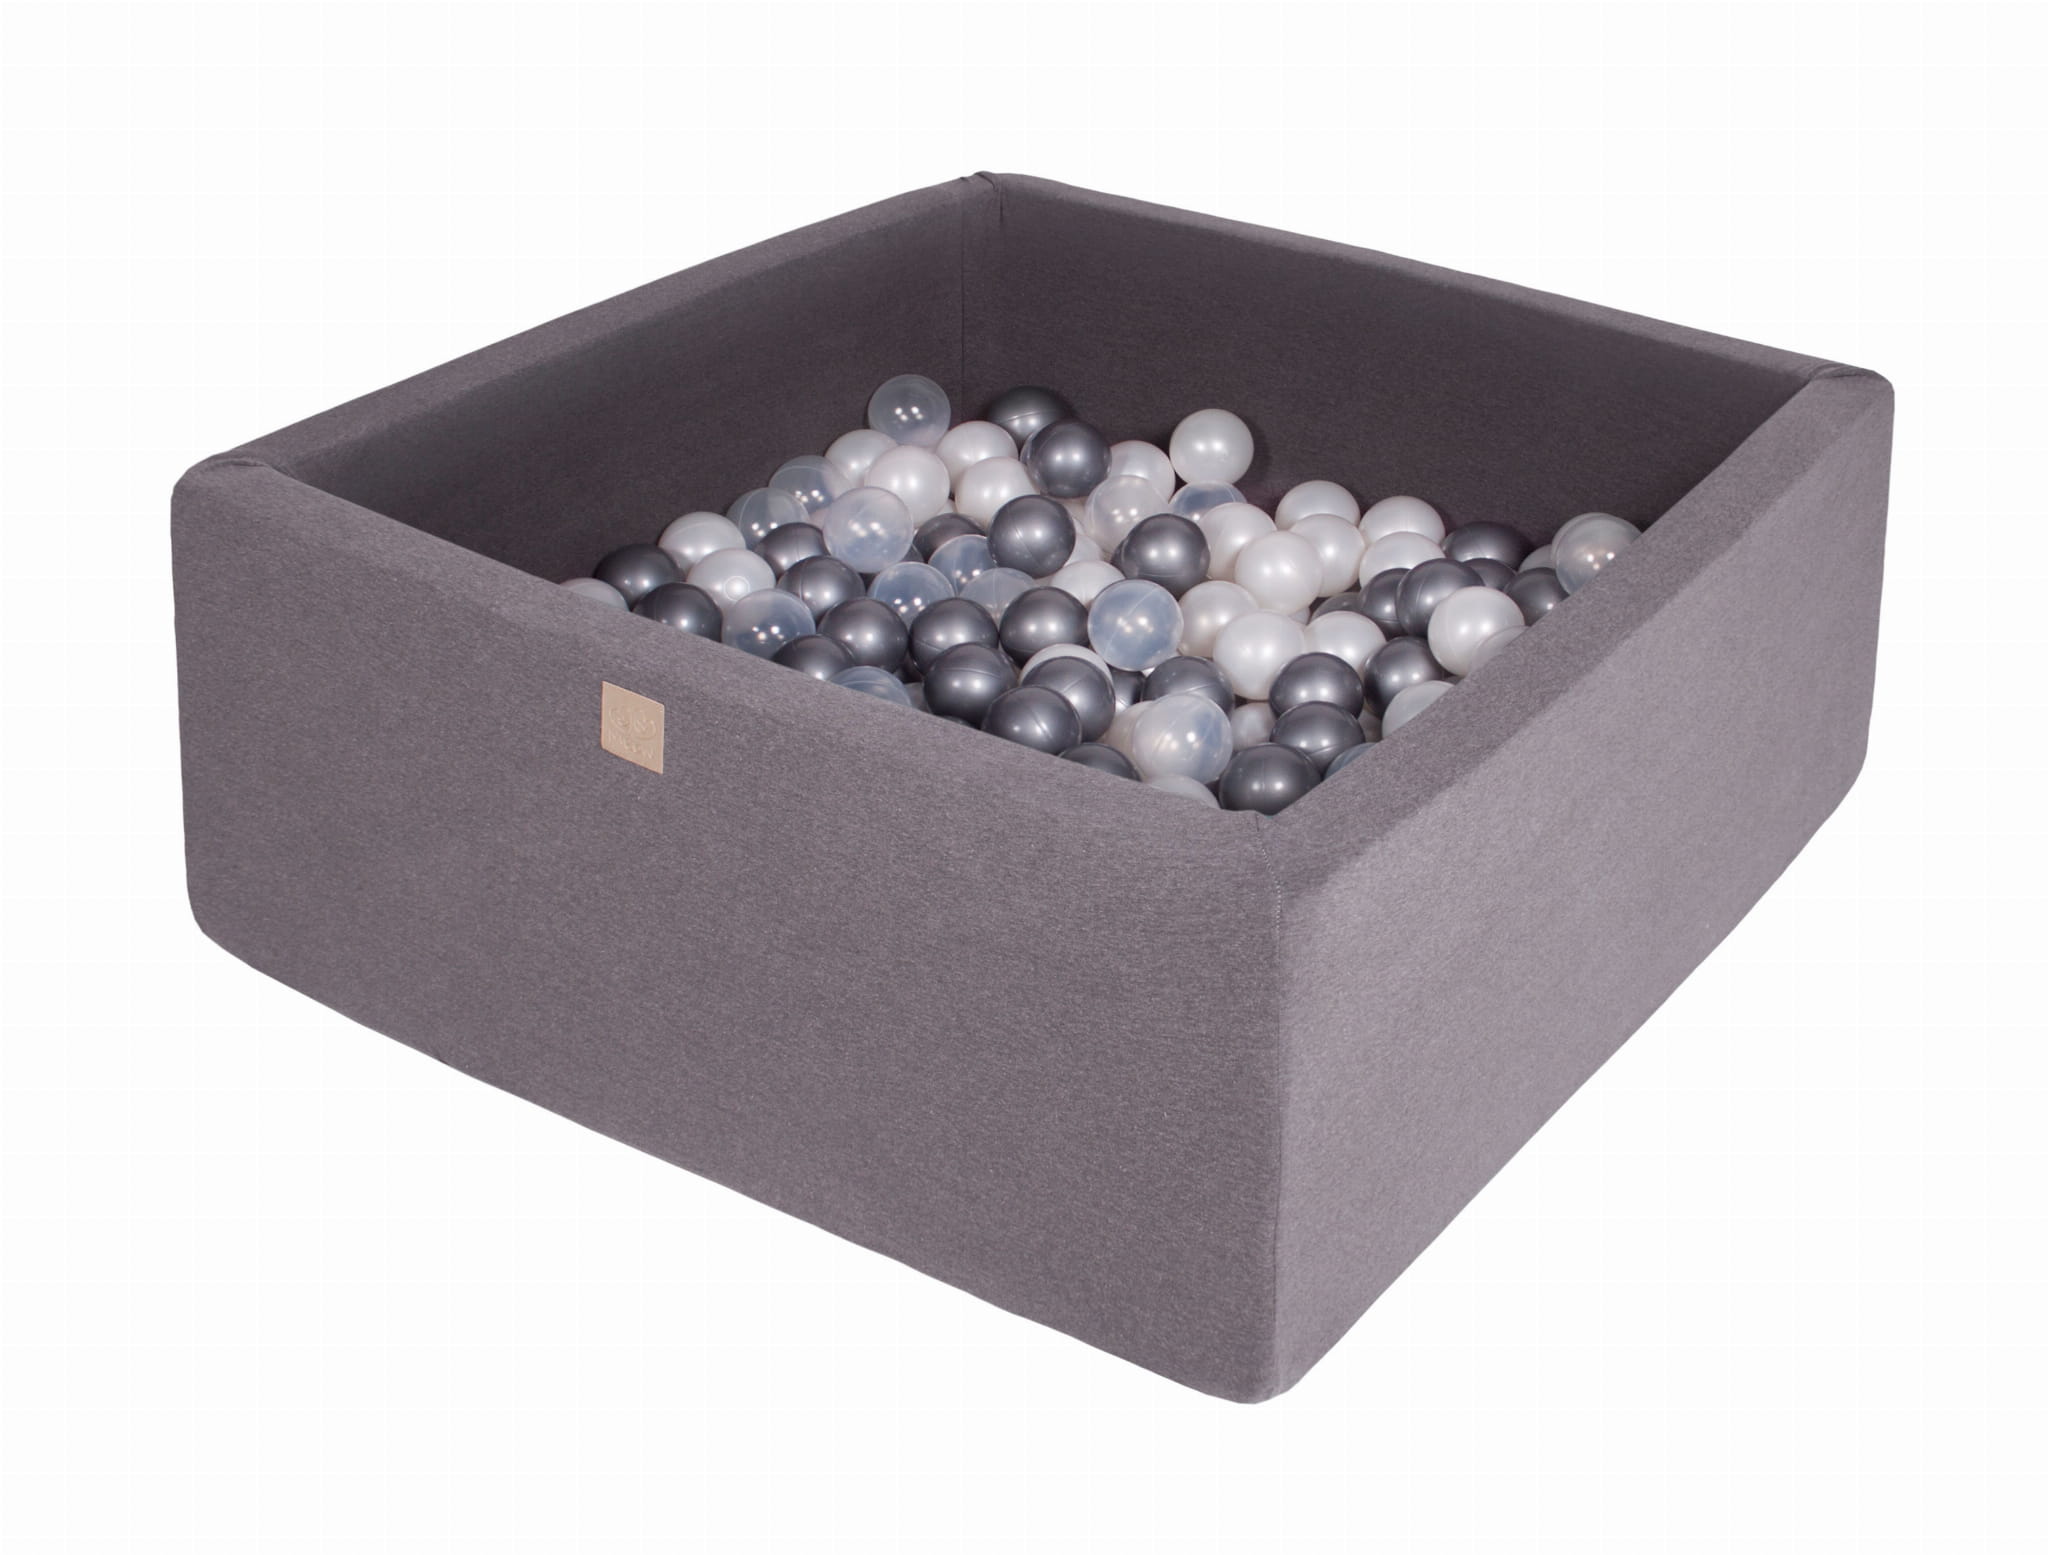 MeowBaby Piscine À balles gris foncé 300 perle blanche/argent/transparent Multicolore 90x40x90cm